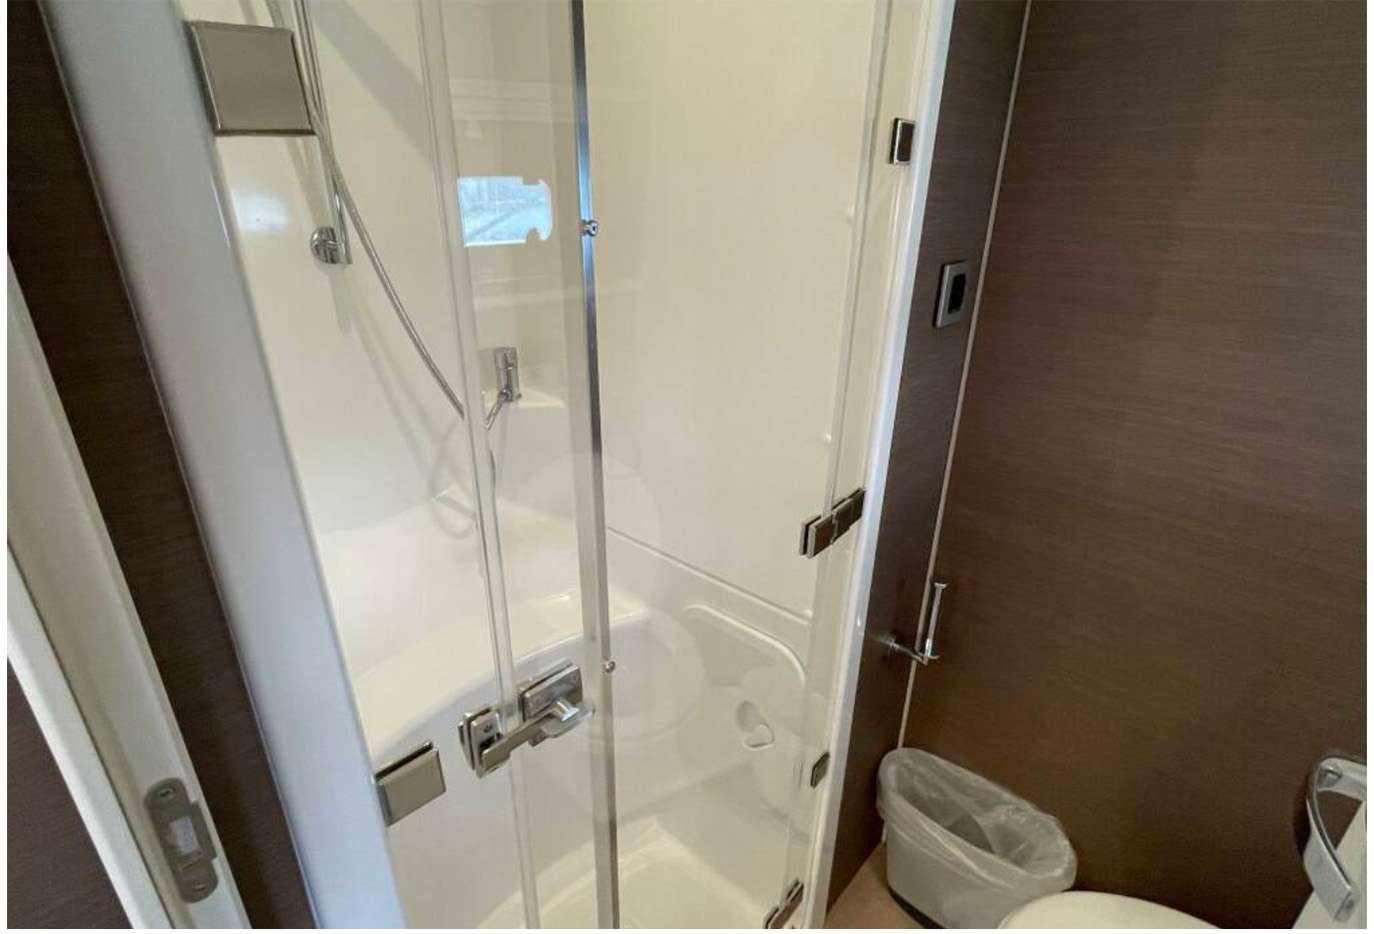 Nae Kae Crewed Catamaran shower stall